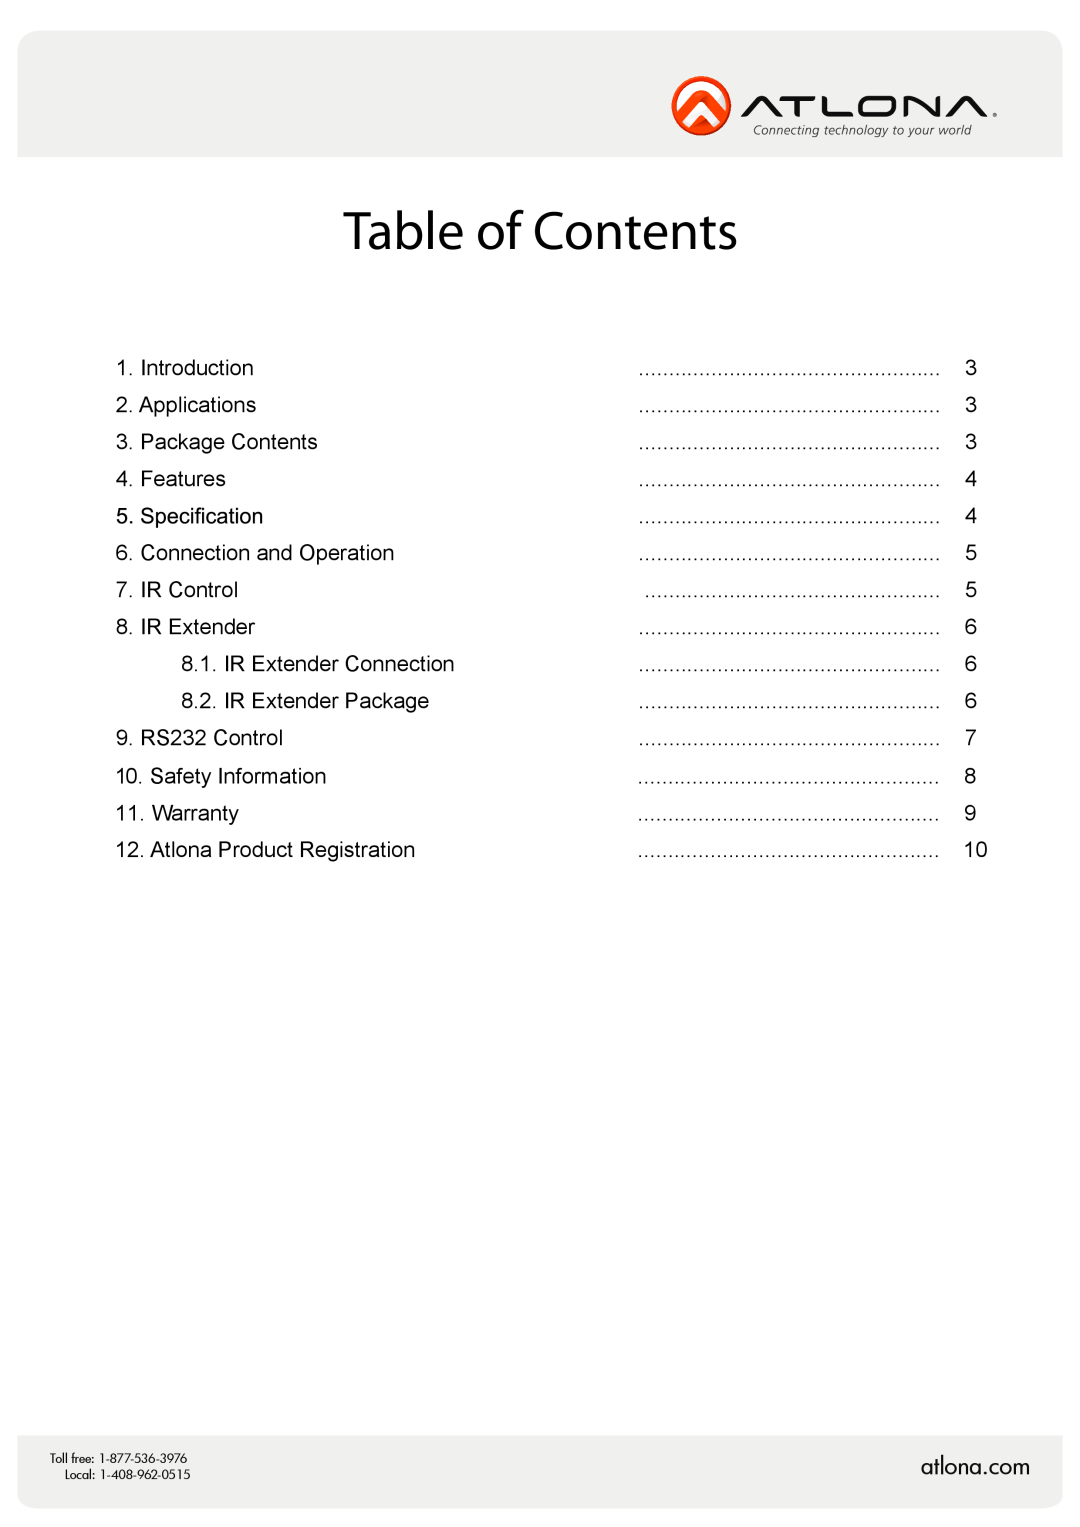 Atlona AT-HD-V16x2, AT-HD-V12x2 user manual atlona.com, Table of Contents 